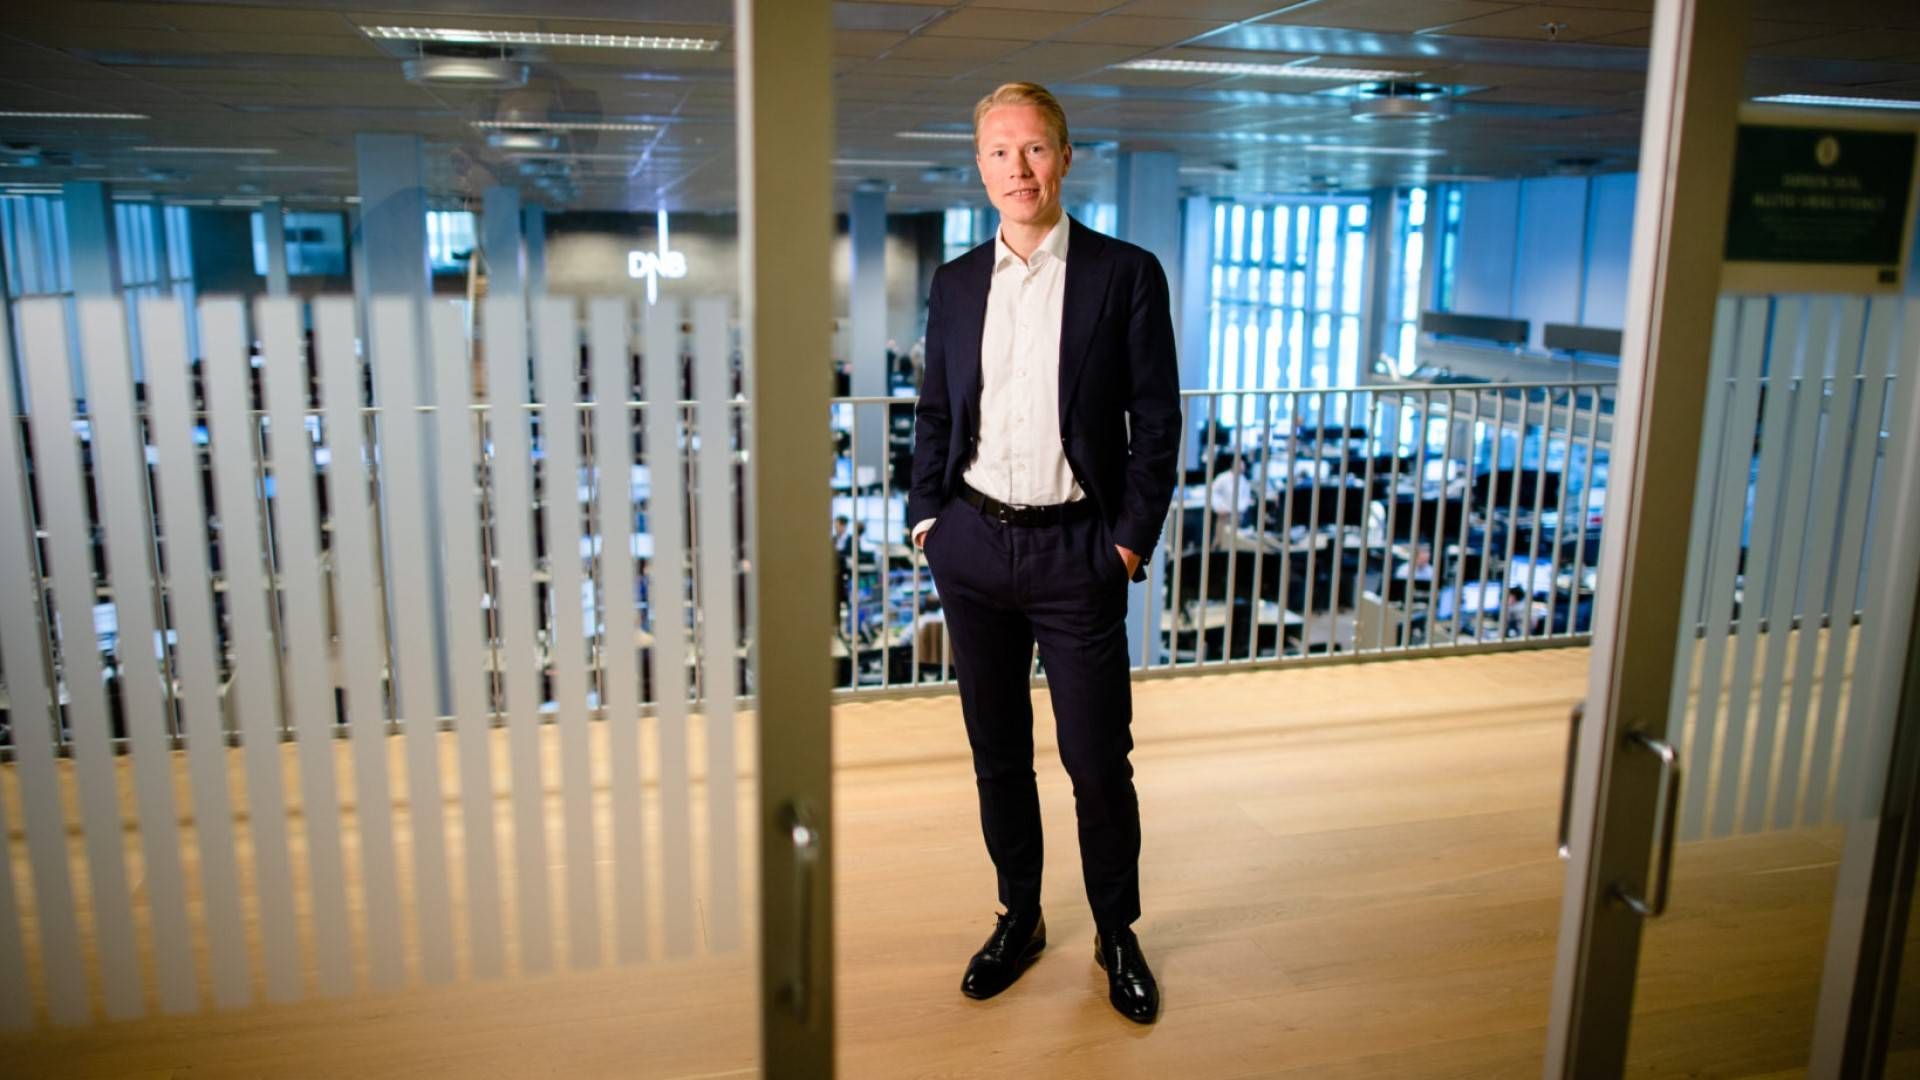 FORDEL NORGE: Bankanalytiker Håkon Astrup i DNB tror bank-kollapsen i USA kan snus til en fordel for solide, norske banker. | Foto: Stig B. Fiksdal/DNB